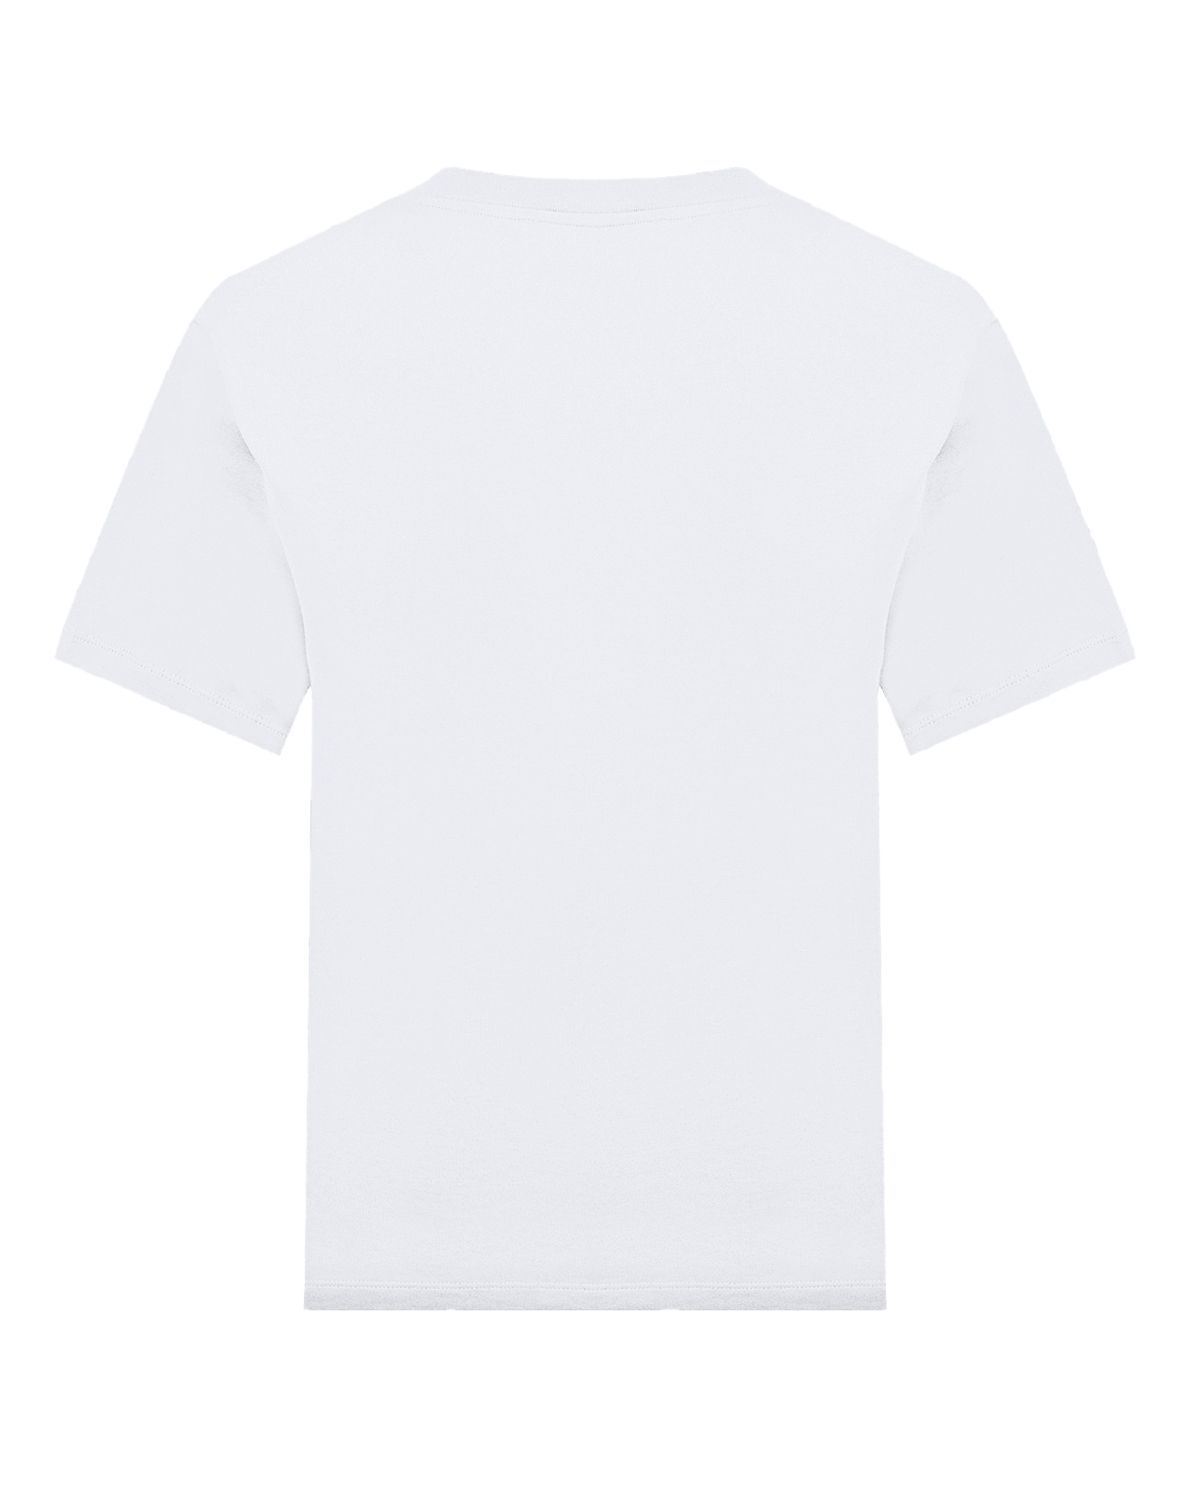 Белая футболка с логотипом Les Coyotes de Paris, размер 40, цвет белый - фото 2